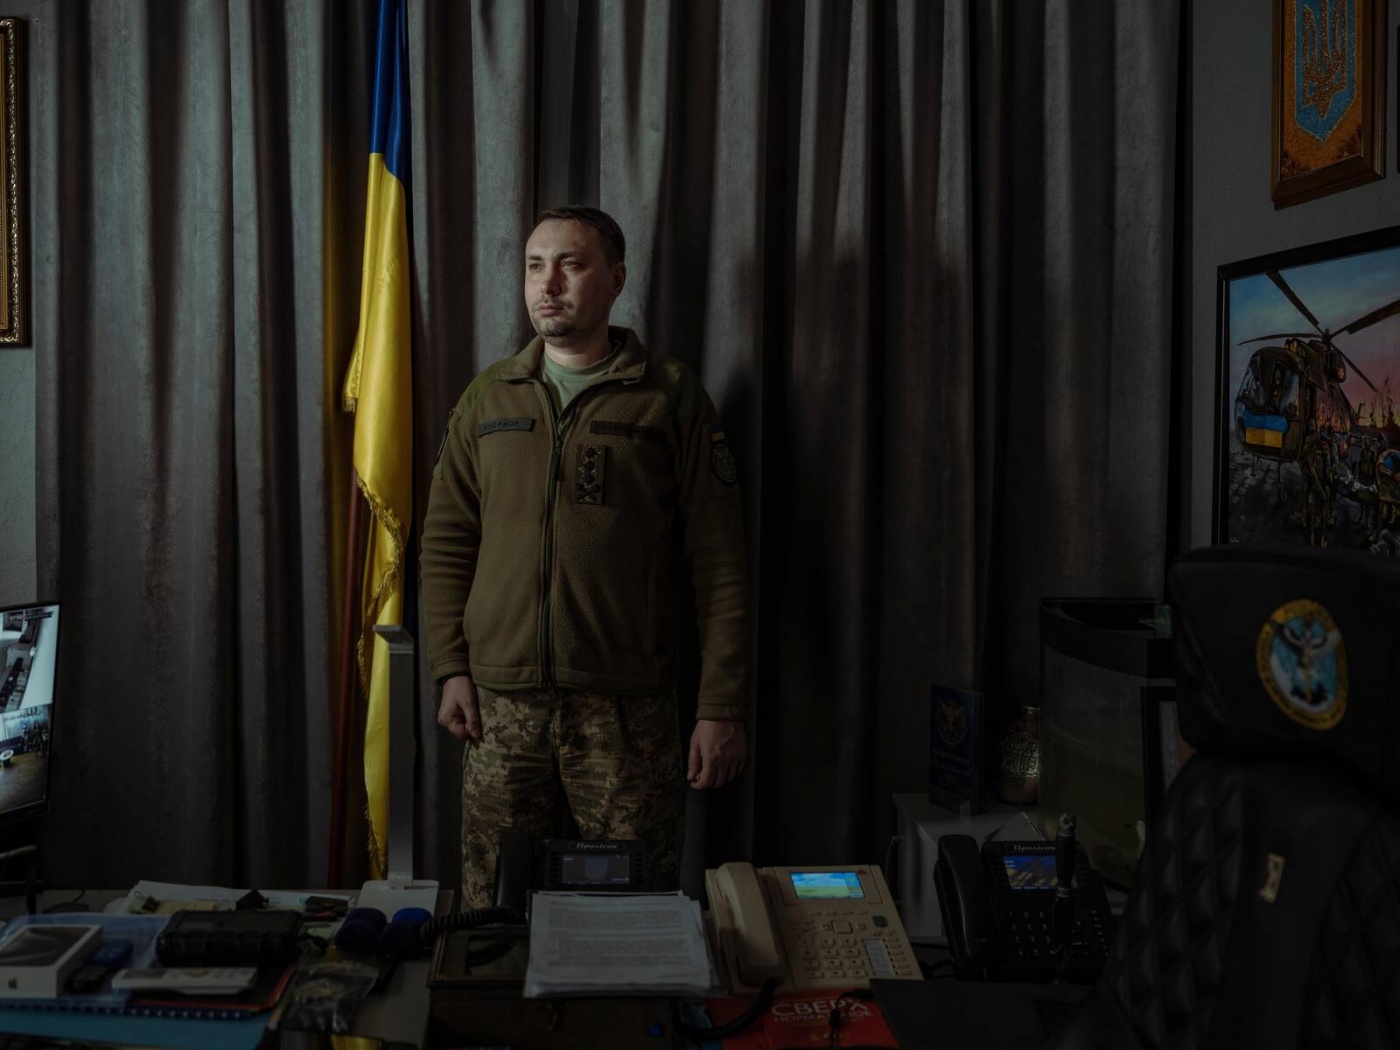 У Буданова запитали, що буде важче повернути, Крим чи Донбас